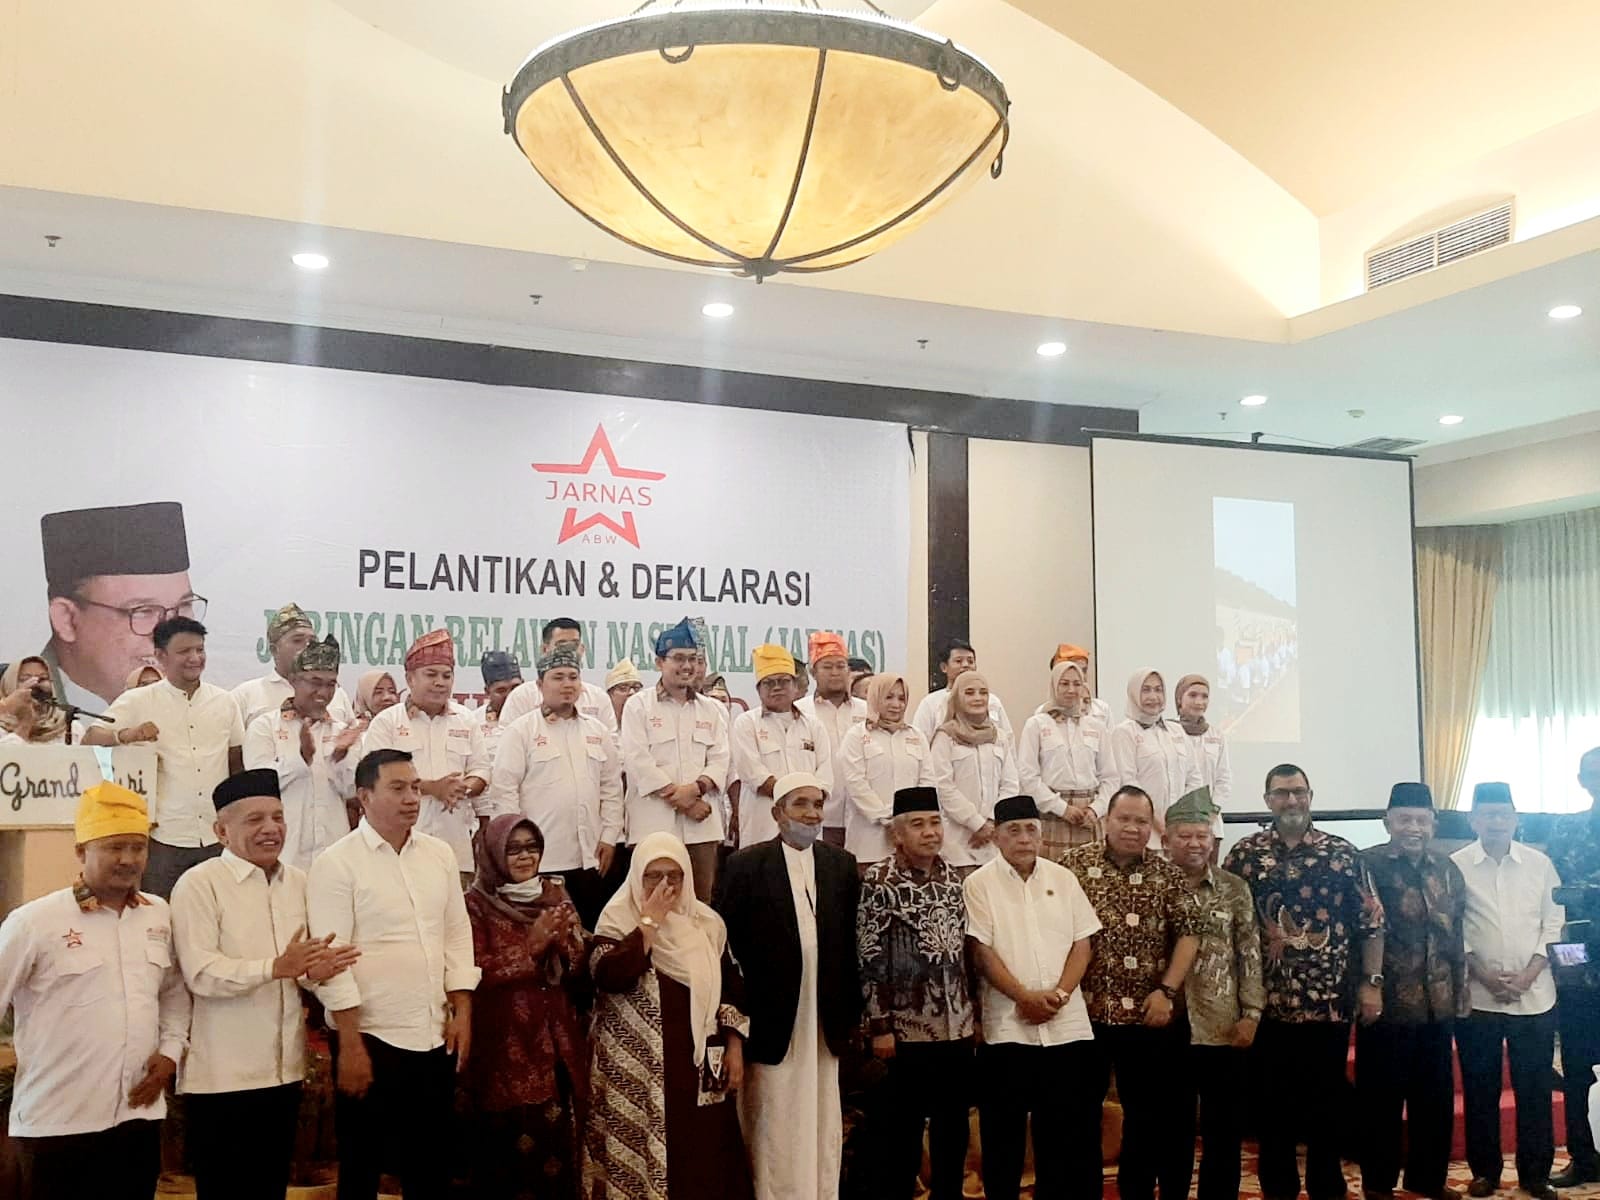 Pelantikan dan Deklarasi Jarnas ABW Riau Dihadiri Puluhan Tokoh Lintas Partai